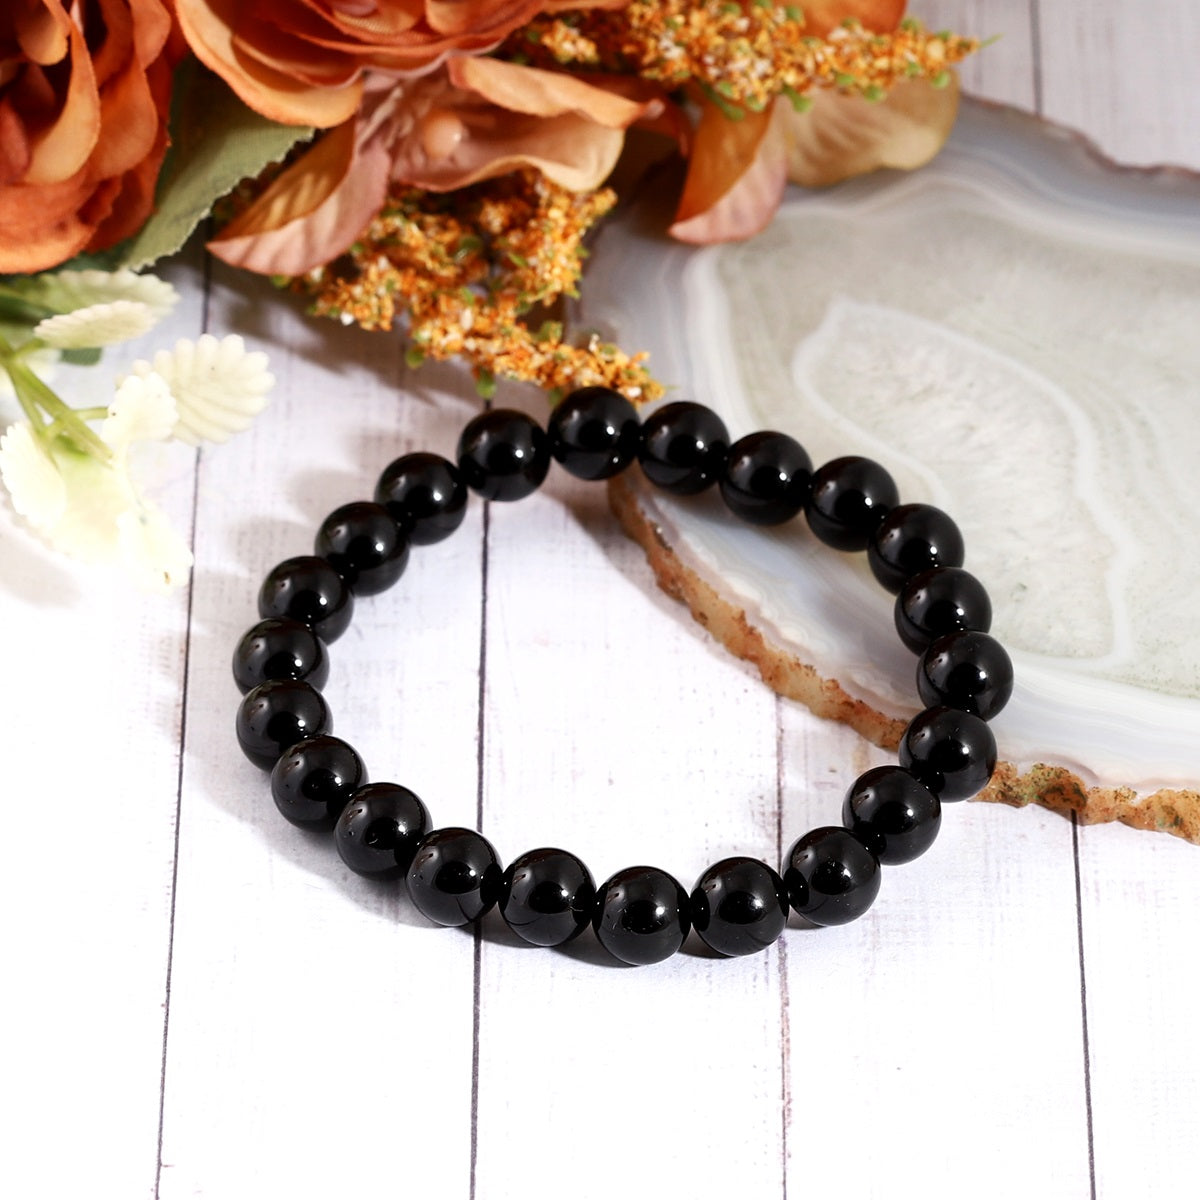 Stylish and versatile - Black Onyx Bracelet enhancing any ensemble with its elegant design and empowering energy